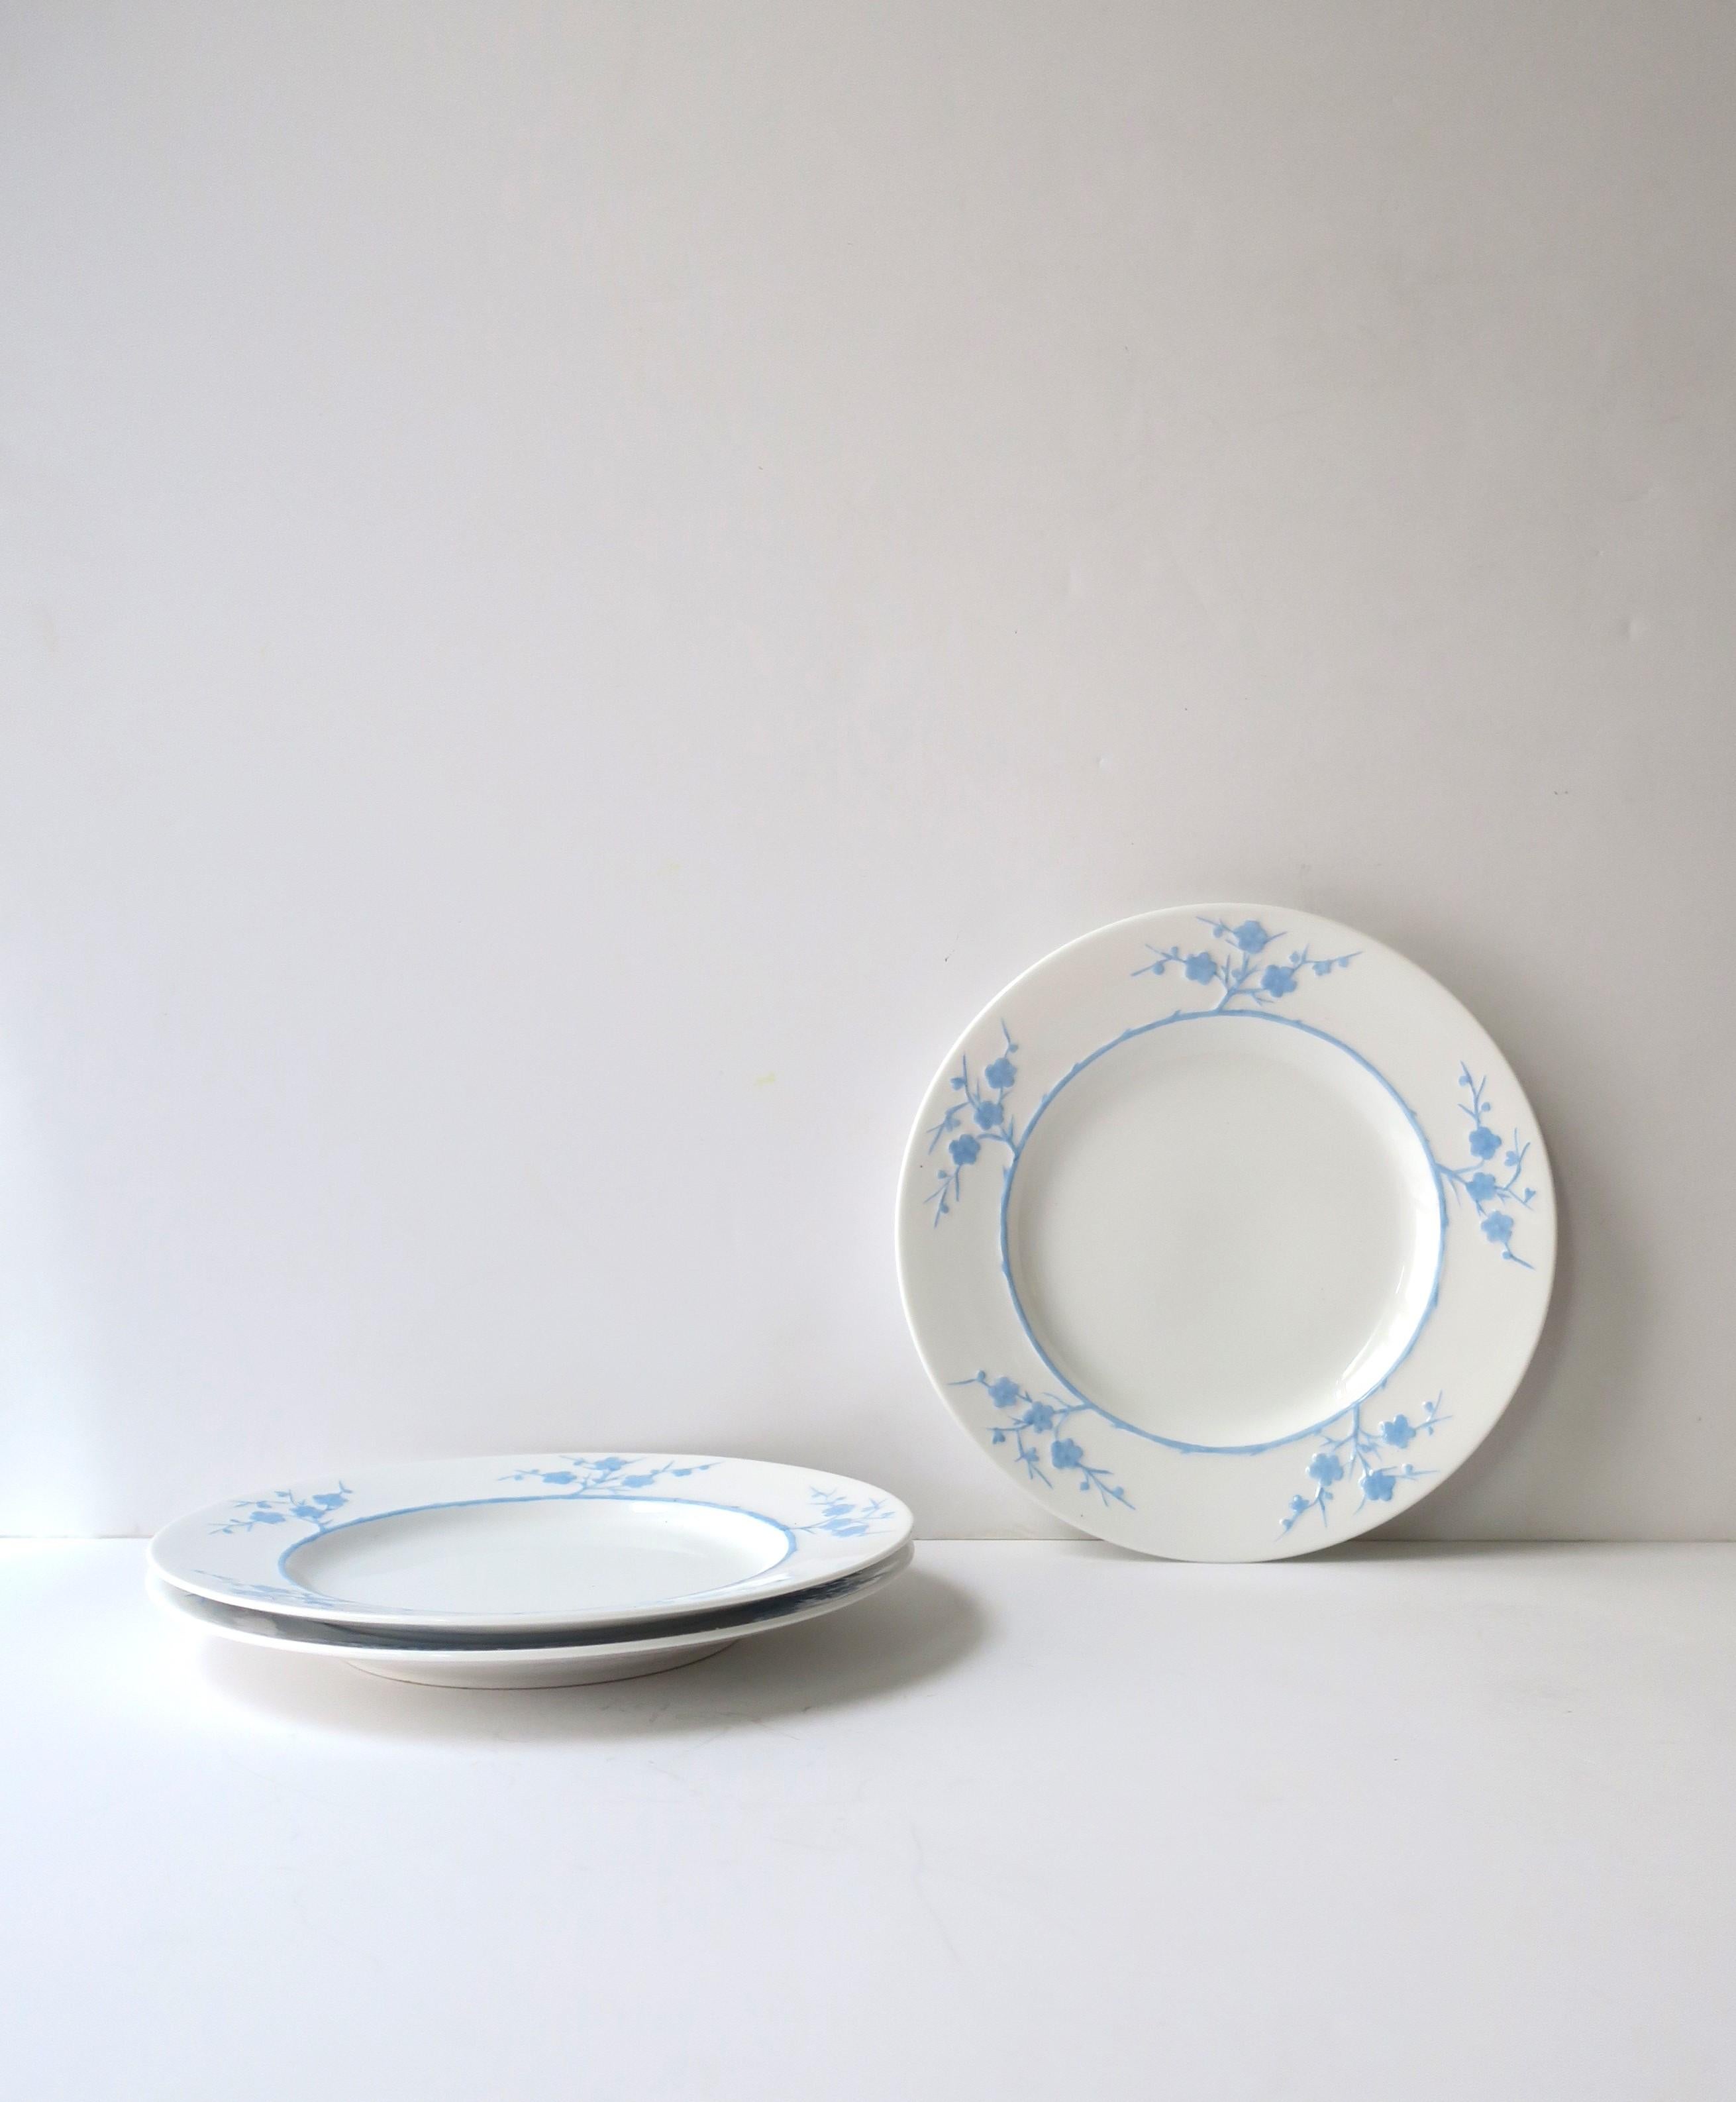 Un magnifique ensemble de trois (3) assiettes en porcelaine Blanche de Chine blanche et bleu clair 'Geisha' par Spode Copeland, vers le 20ème siècle, Angleterre. Avec la marque du fabricant et numérotée sur la face inférieure, comme le montrent les